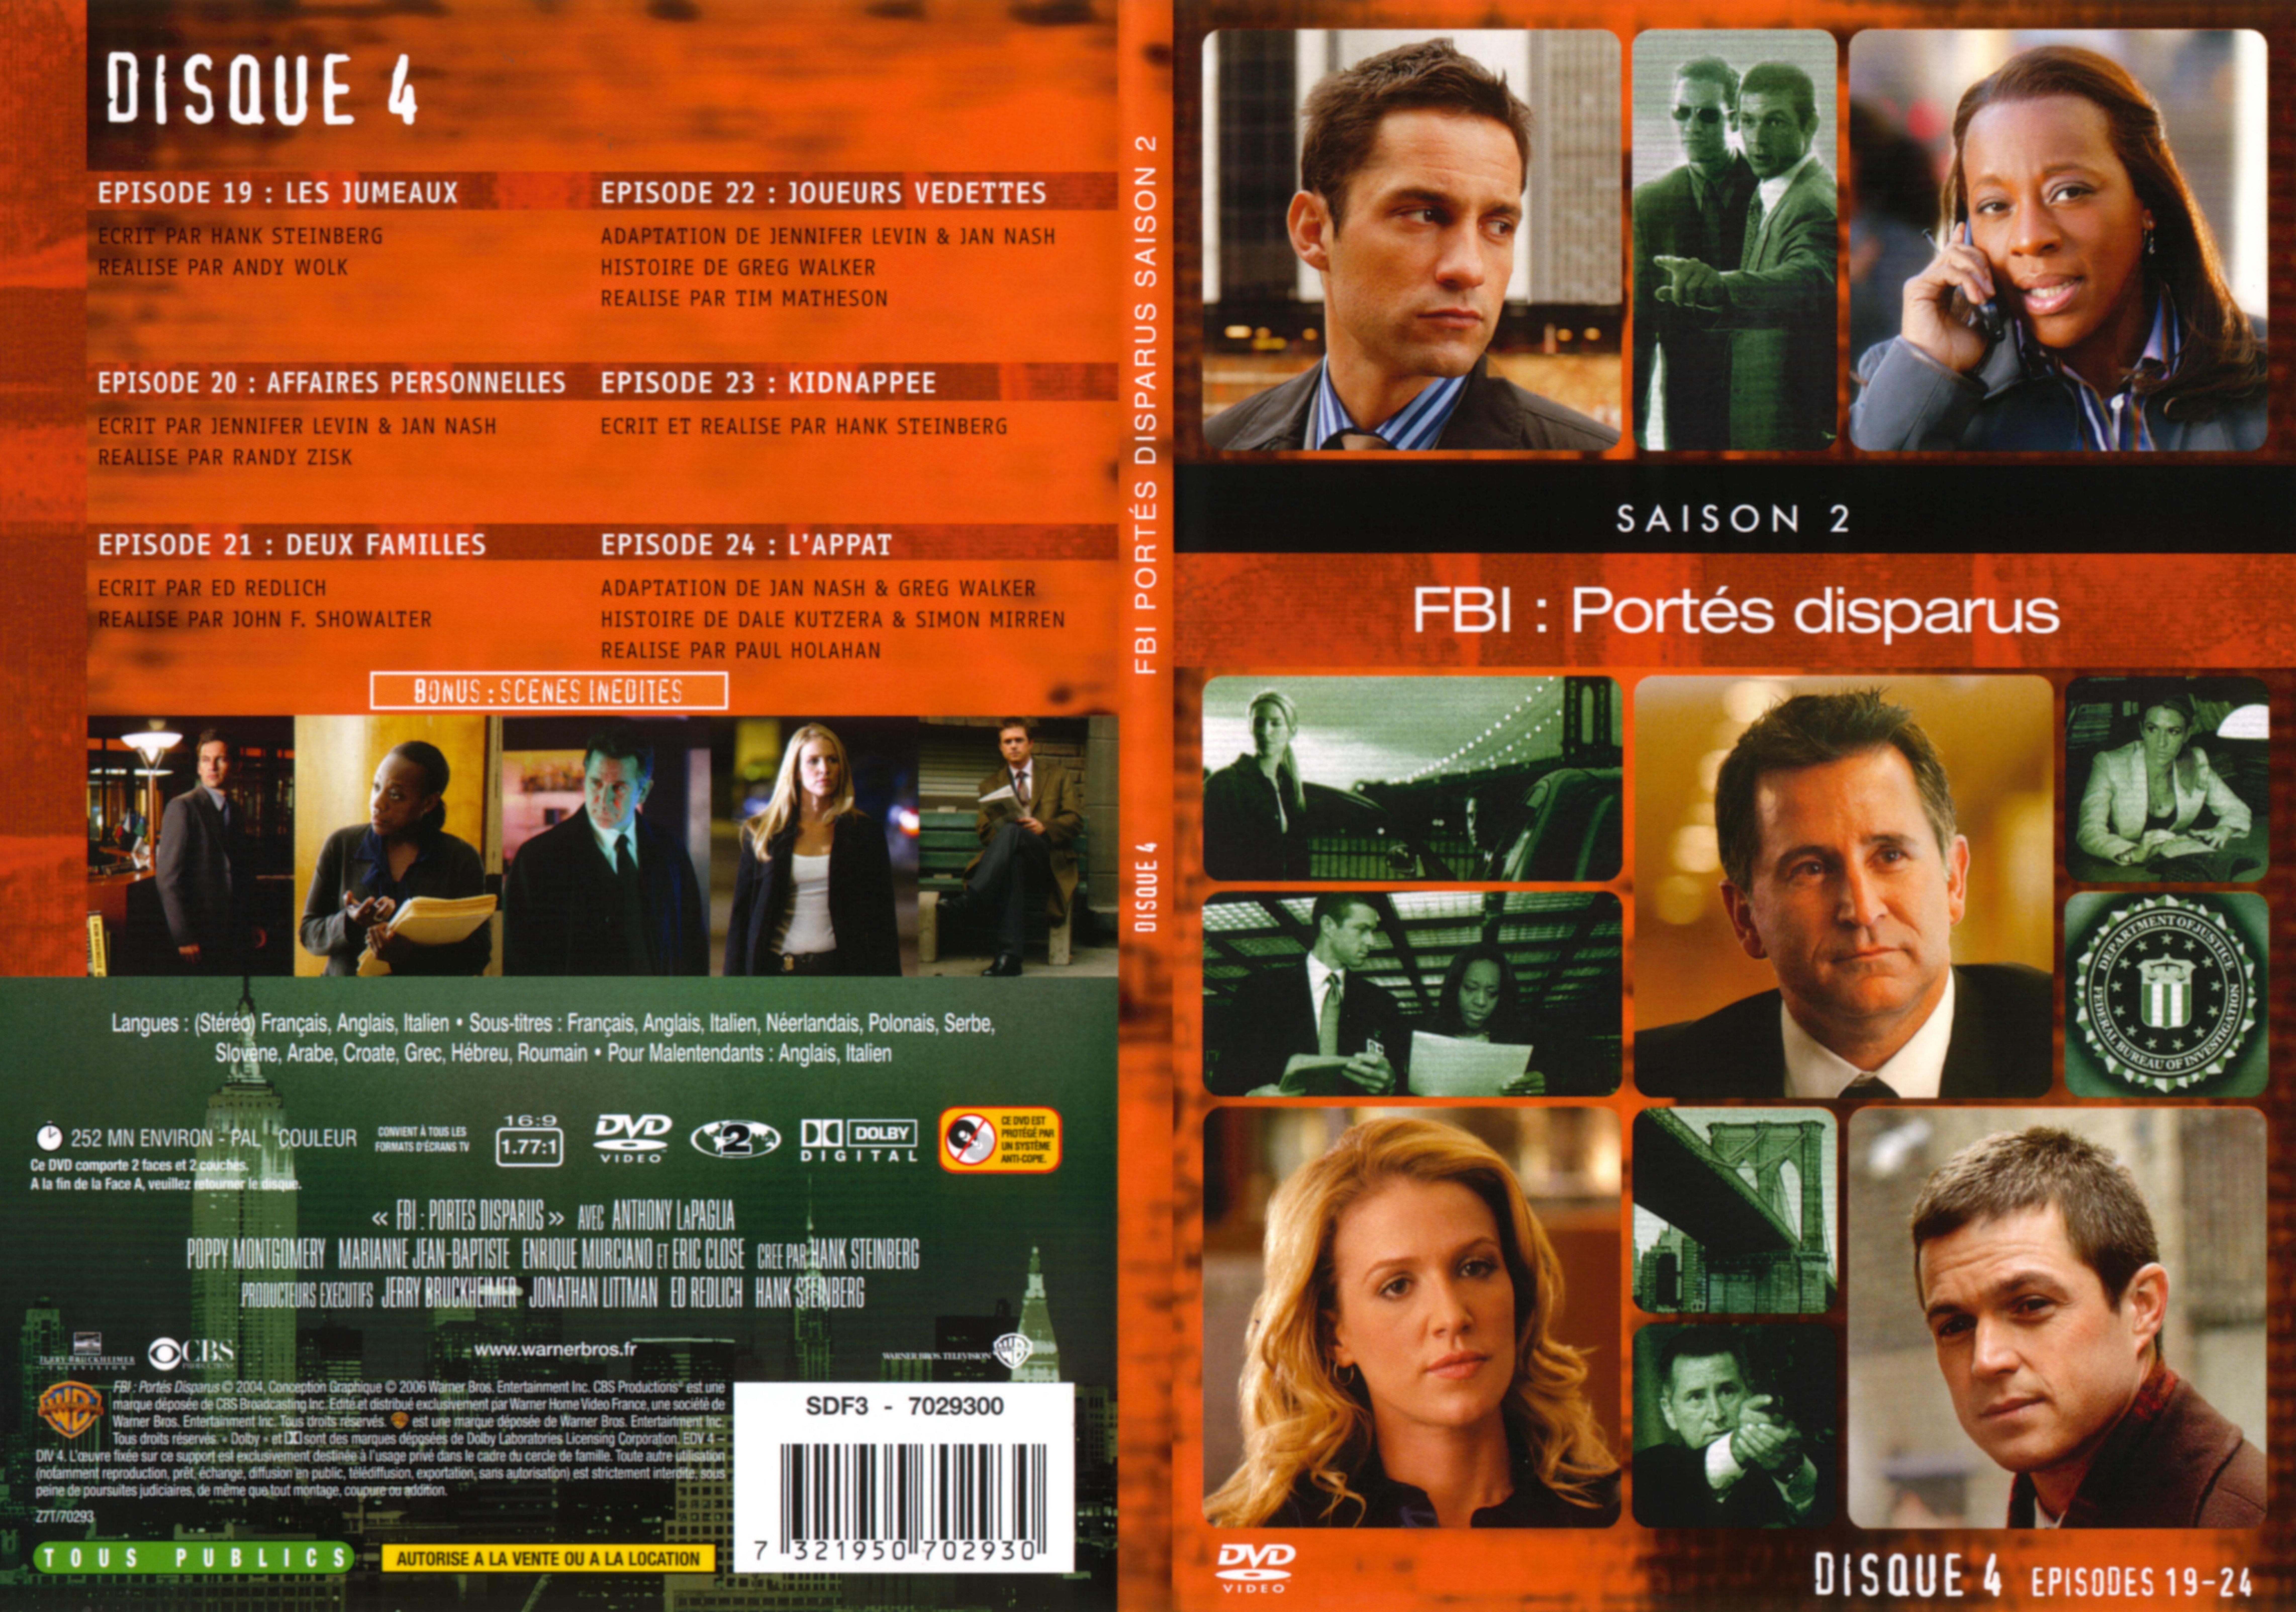 Jaquette DVD FBI ports disparus Saison 2 vol 4